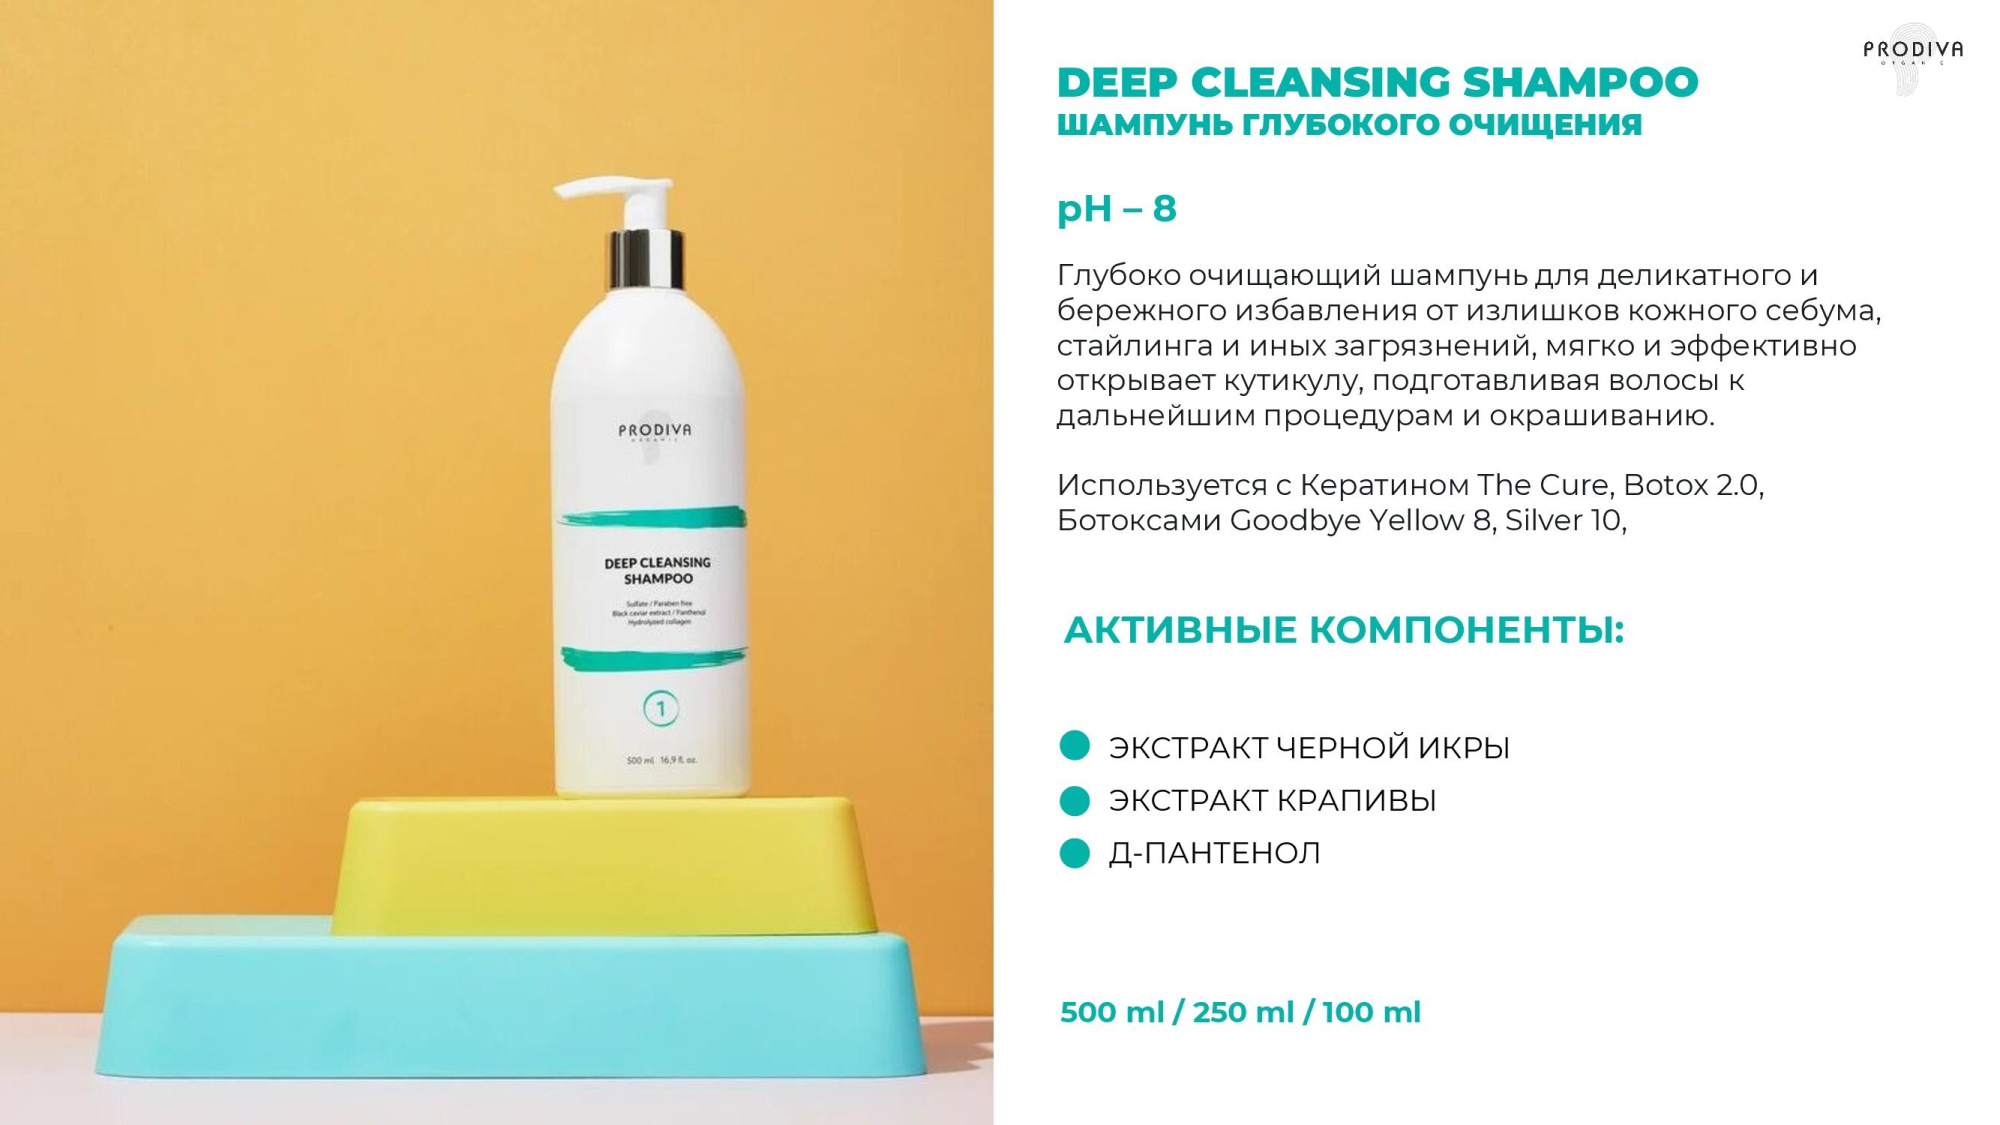 Шампунь глубокого очищения PRODIVA Deep Cleansing Shampoo, 250 мл